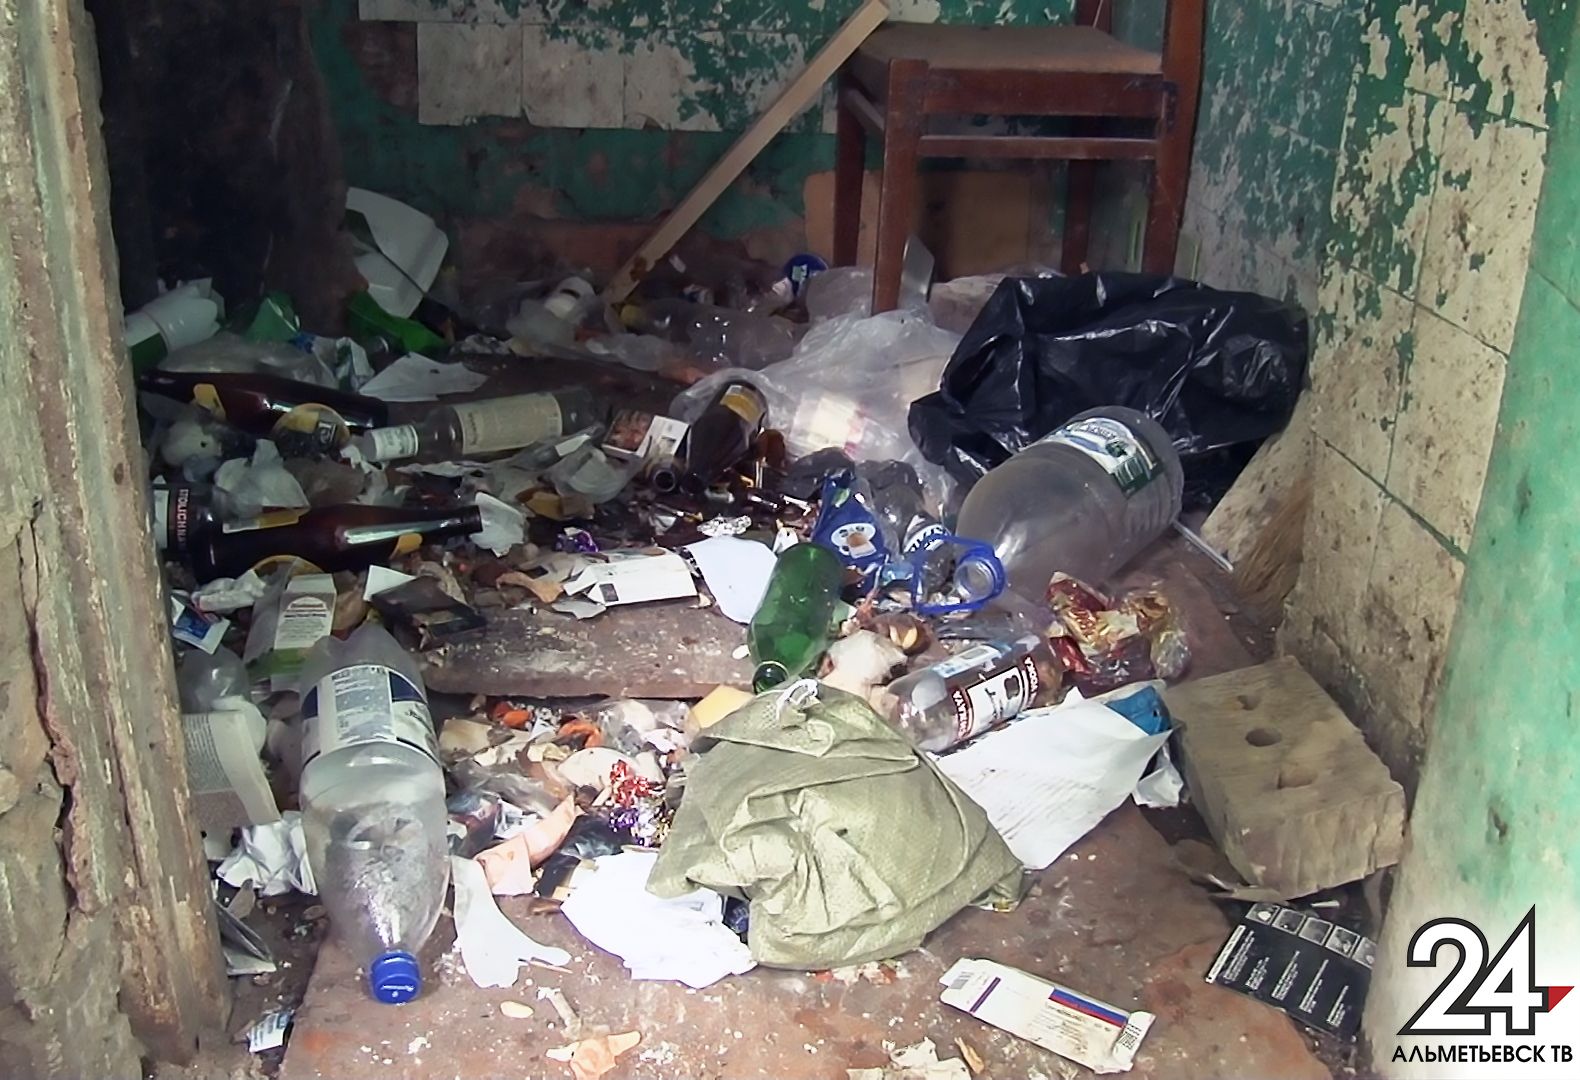 Жители одной из девятиэтажек в Альметьевске пожаловались, что их дом утопает в мусоре